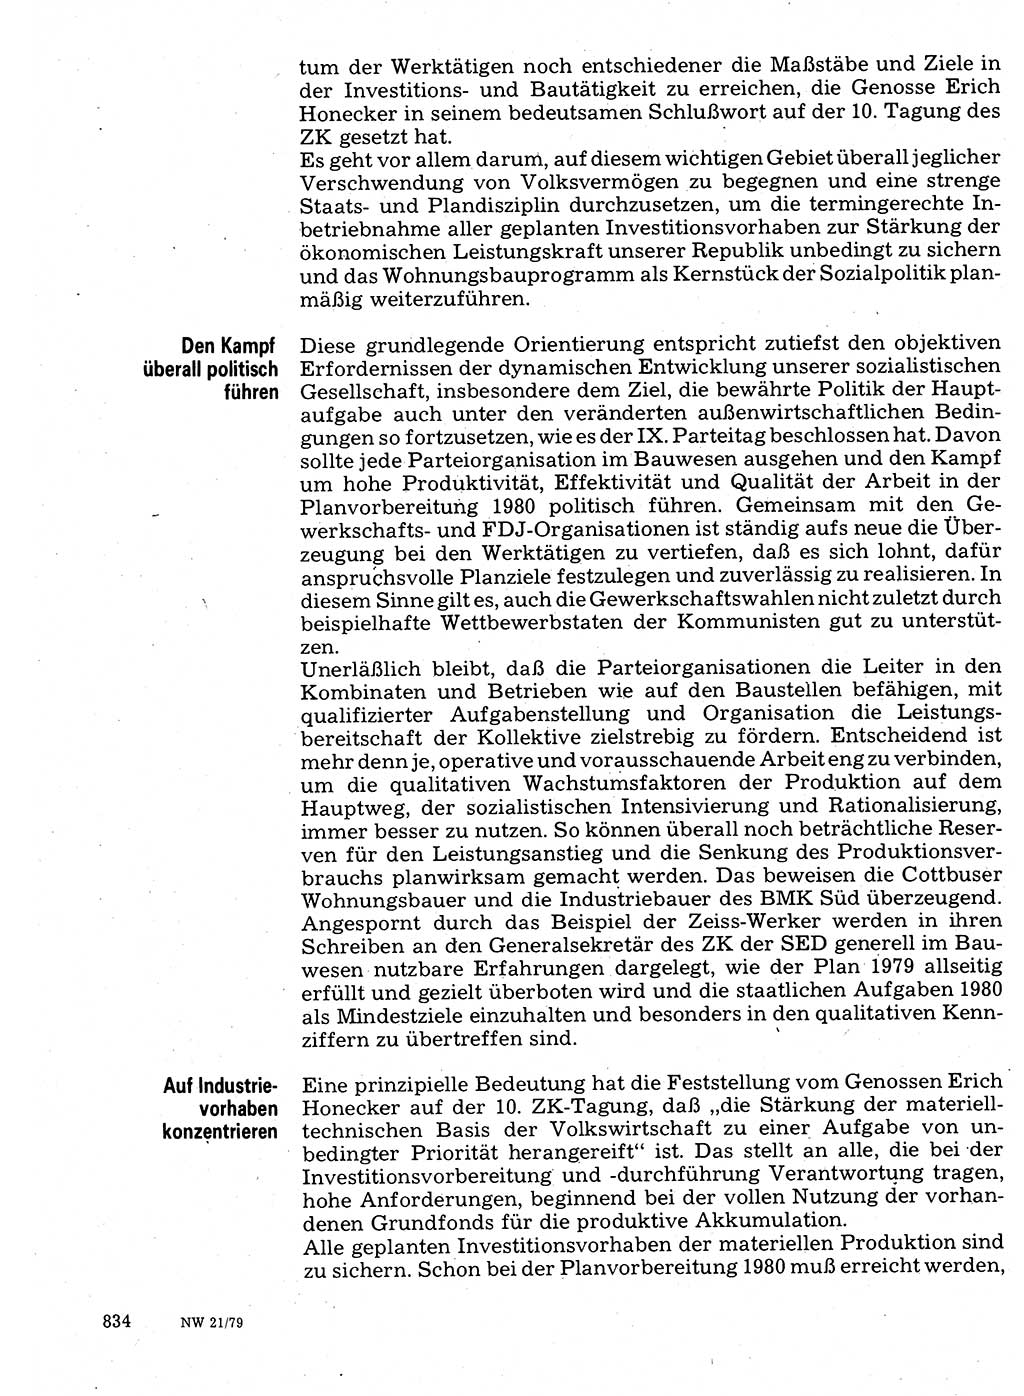 Neuer Weg (NW), Organ des Zentralkomitees (ZK) der SED (Sozialistische Einheitspartei Deutschlands) für Fragen des Parteilebens, 34. Jahrgang [Deutsche Demokratische Republik (DDR)] 1979, Seite 834 (NW ZK SED DDR 1979, S. 834)